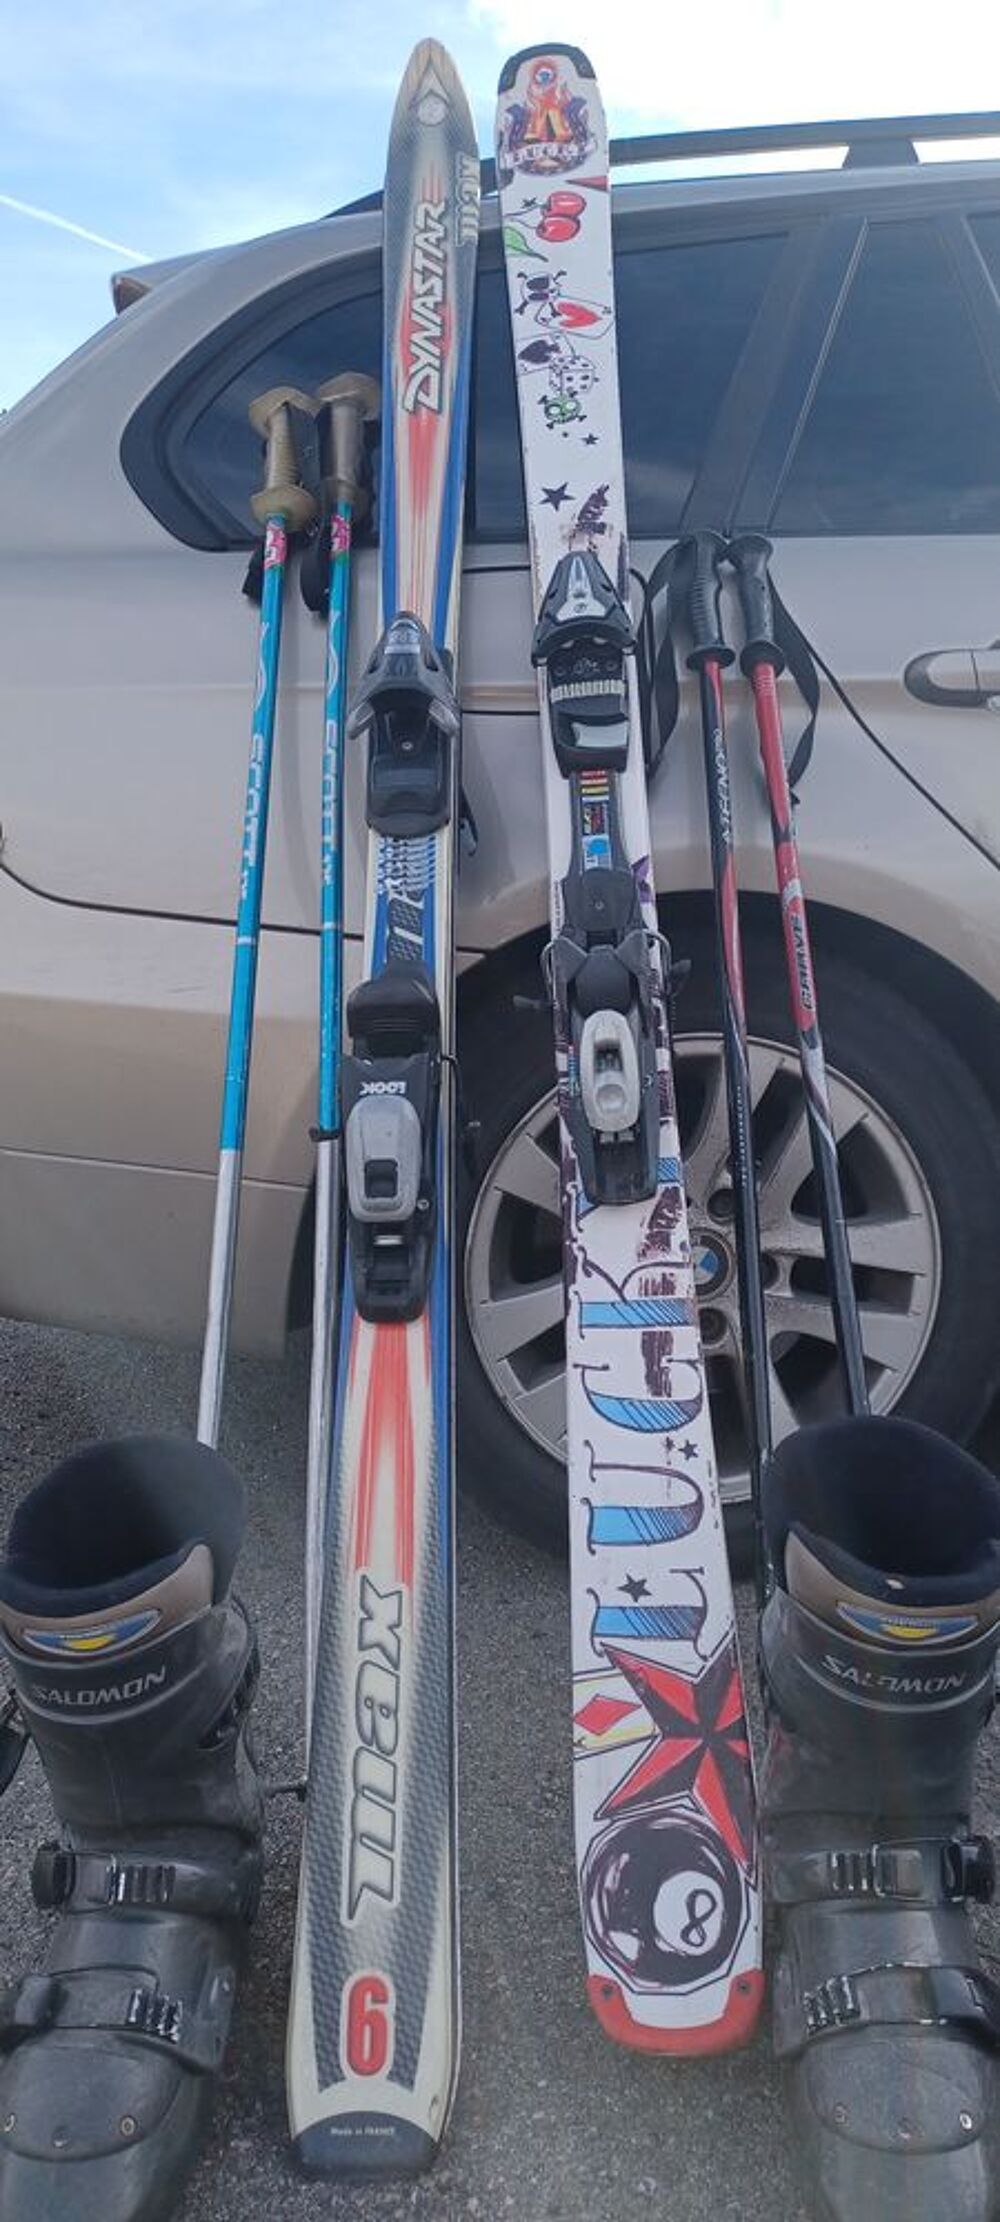 3 paires de skis/batons
Sports